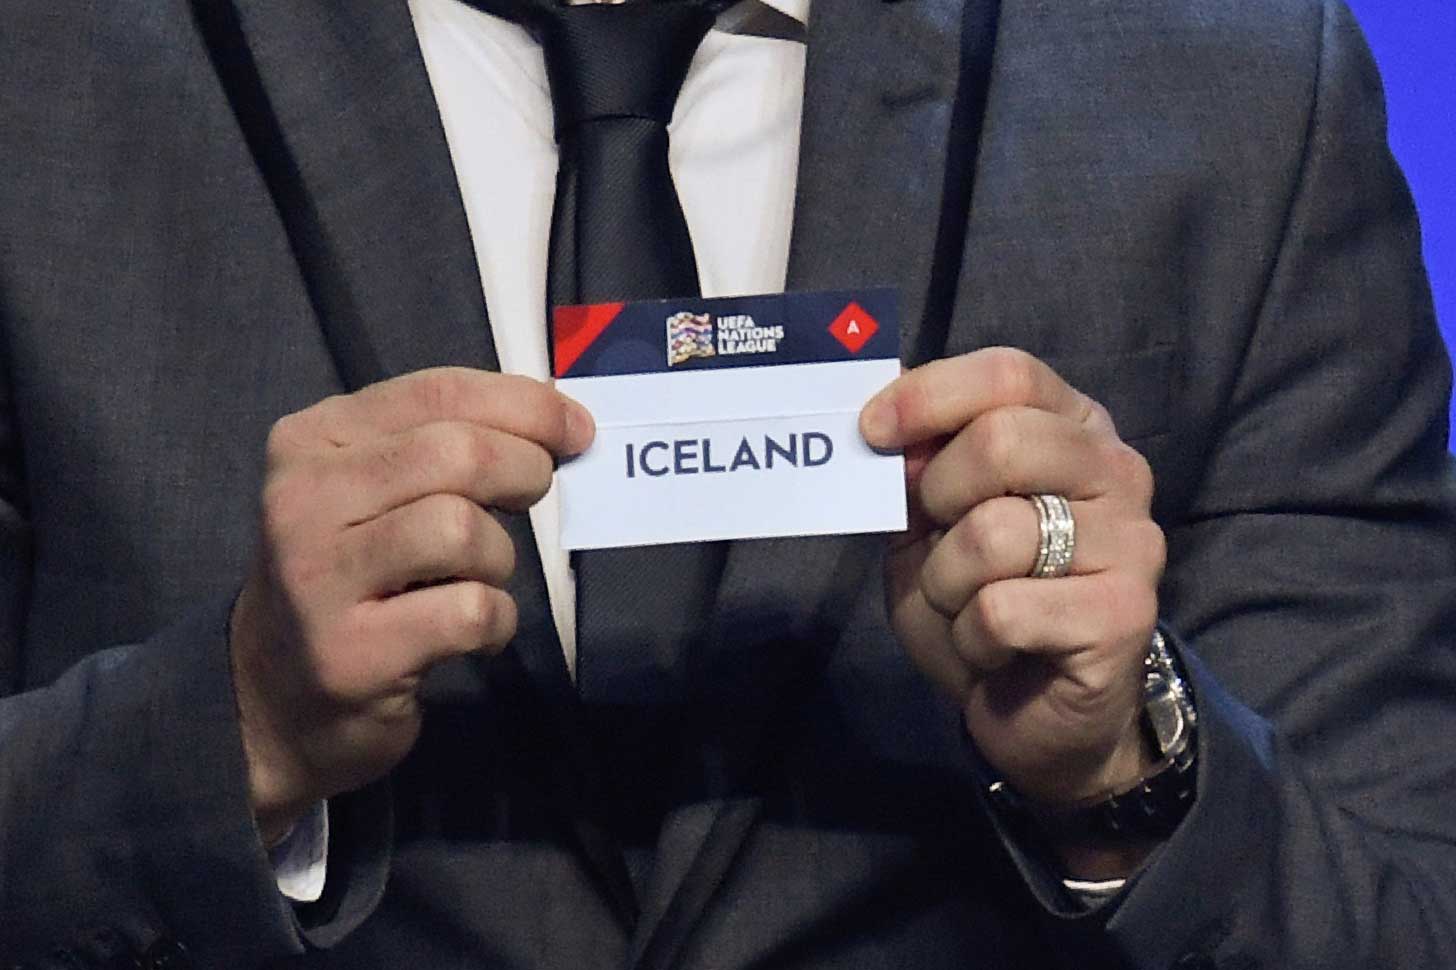 冰岛足球国家队挑战2018世界杯的神话!没有不